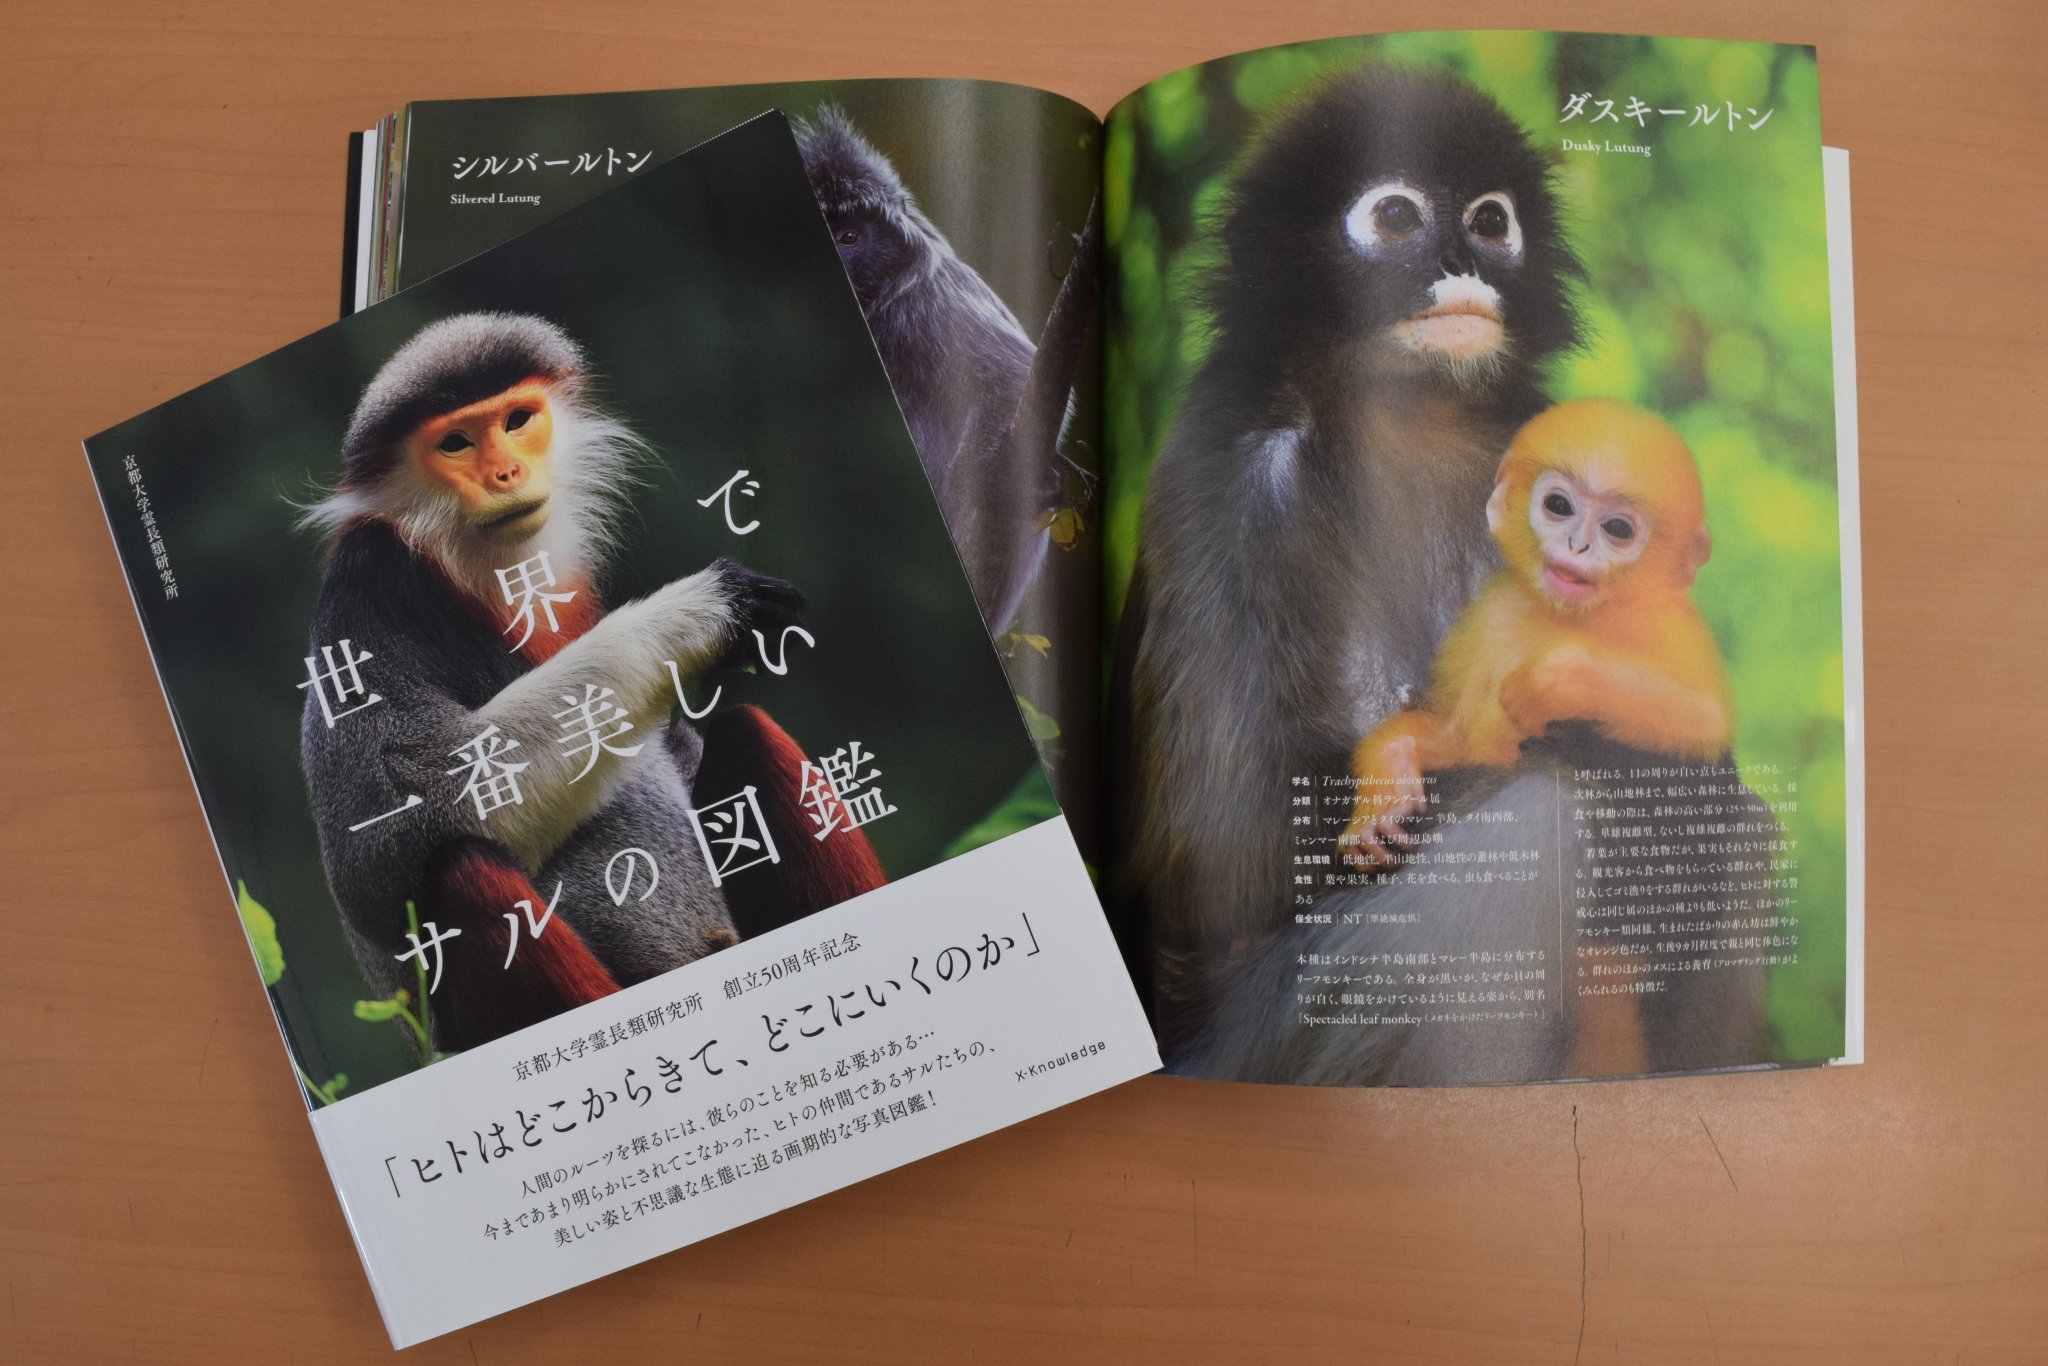 日本モンキーセンター 公式 世界で一番美しいサルの図鑑 サルたちの美しい写真がこれでもかと載っています 美しい写真をみて癒されましょう 図鑑なので勉強にもなりますよ 阪倉 T Co 4ppxygf6lc 休園中の動物園水族館 おうち